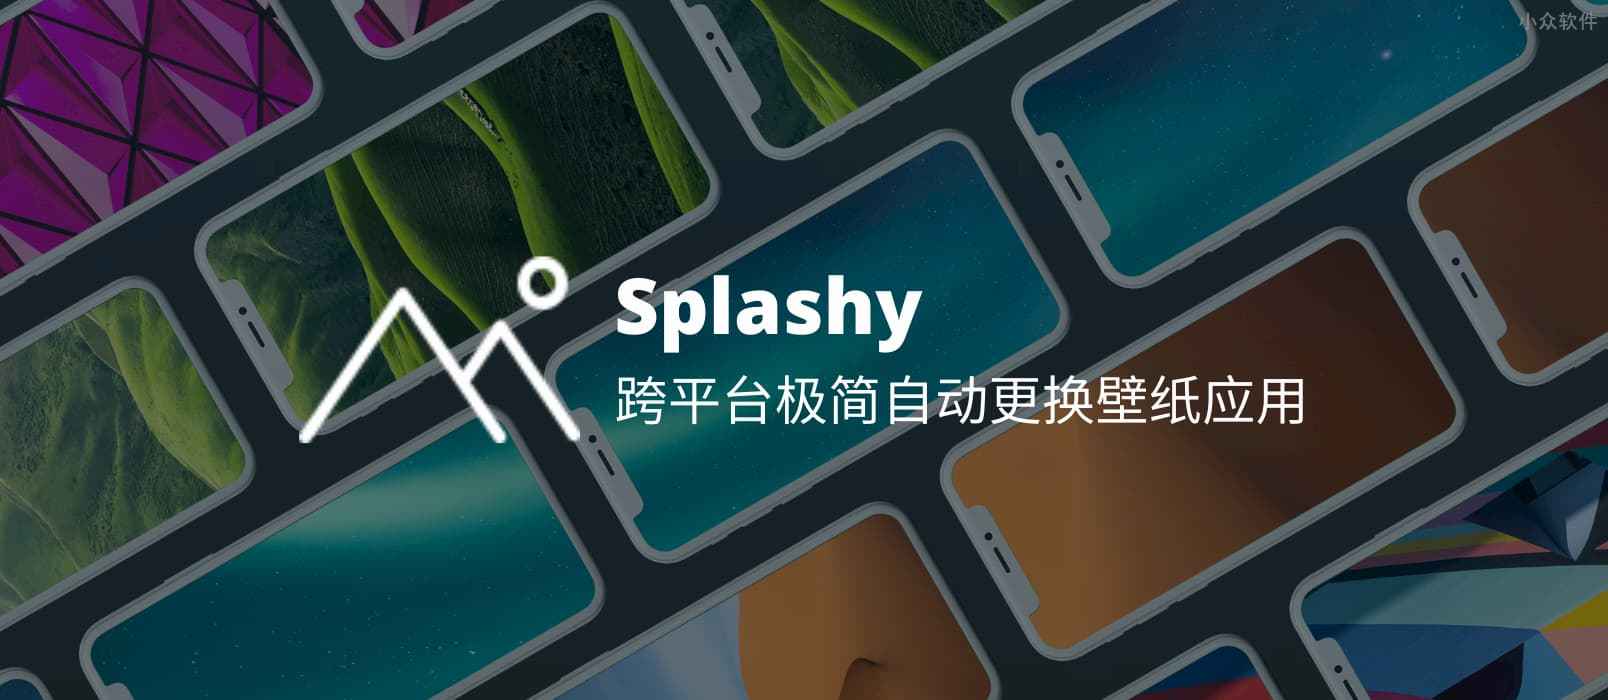 Splashy - 极简壁纸工具，跨平台，新增国家地理、Google 艺术、Pexels、Pixabay 壁纸 1